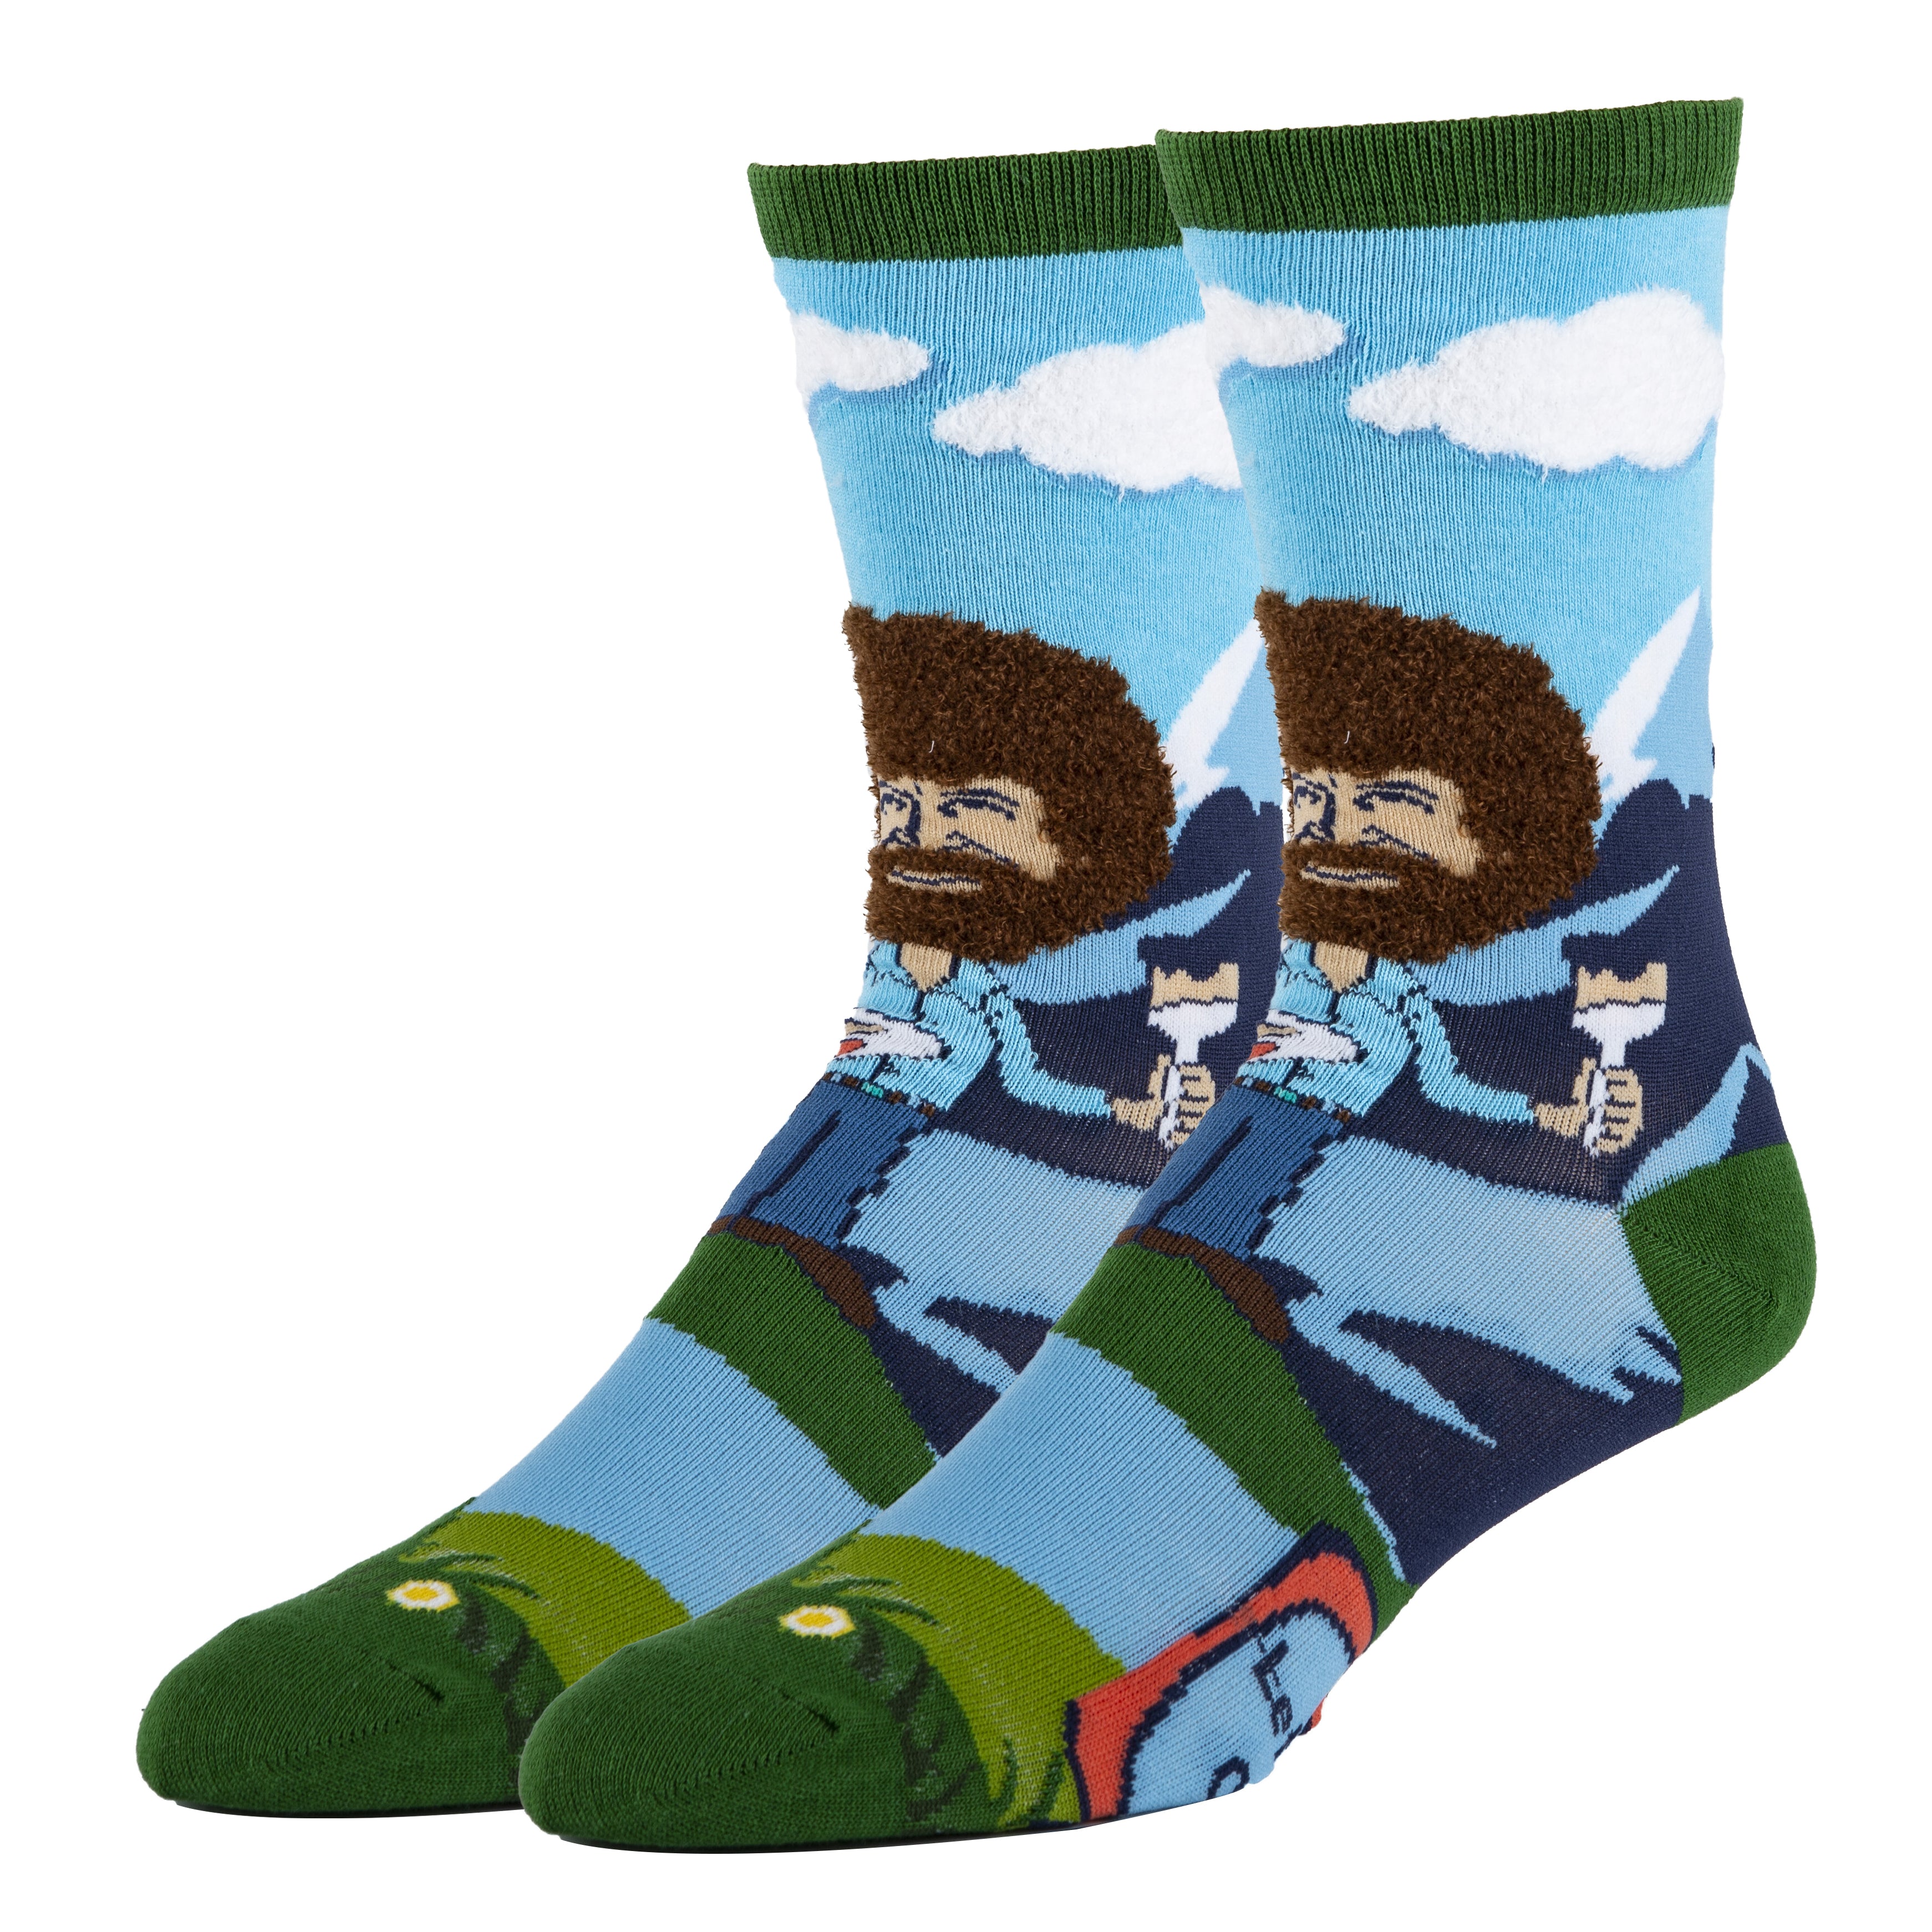 Men's Wild Tiger Socks - Socks n Socks